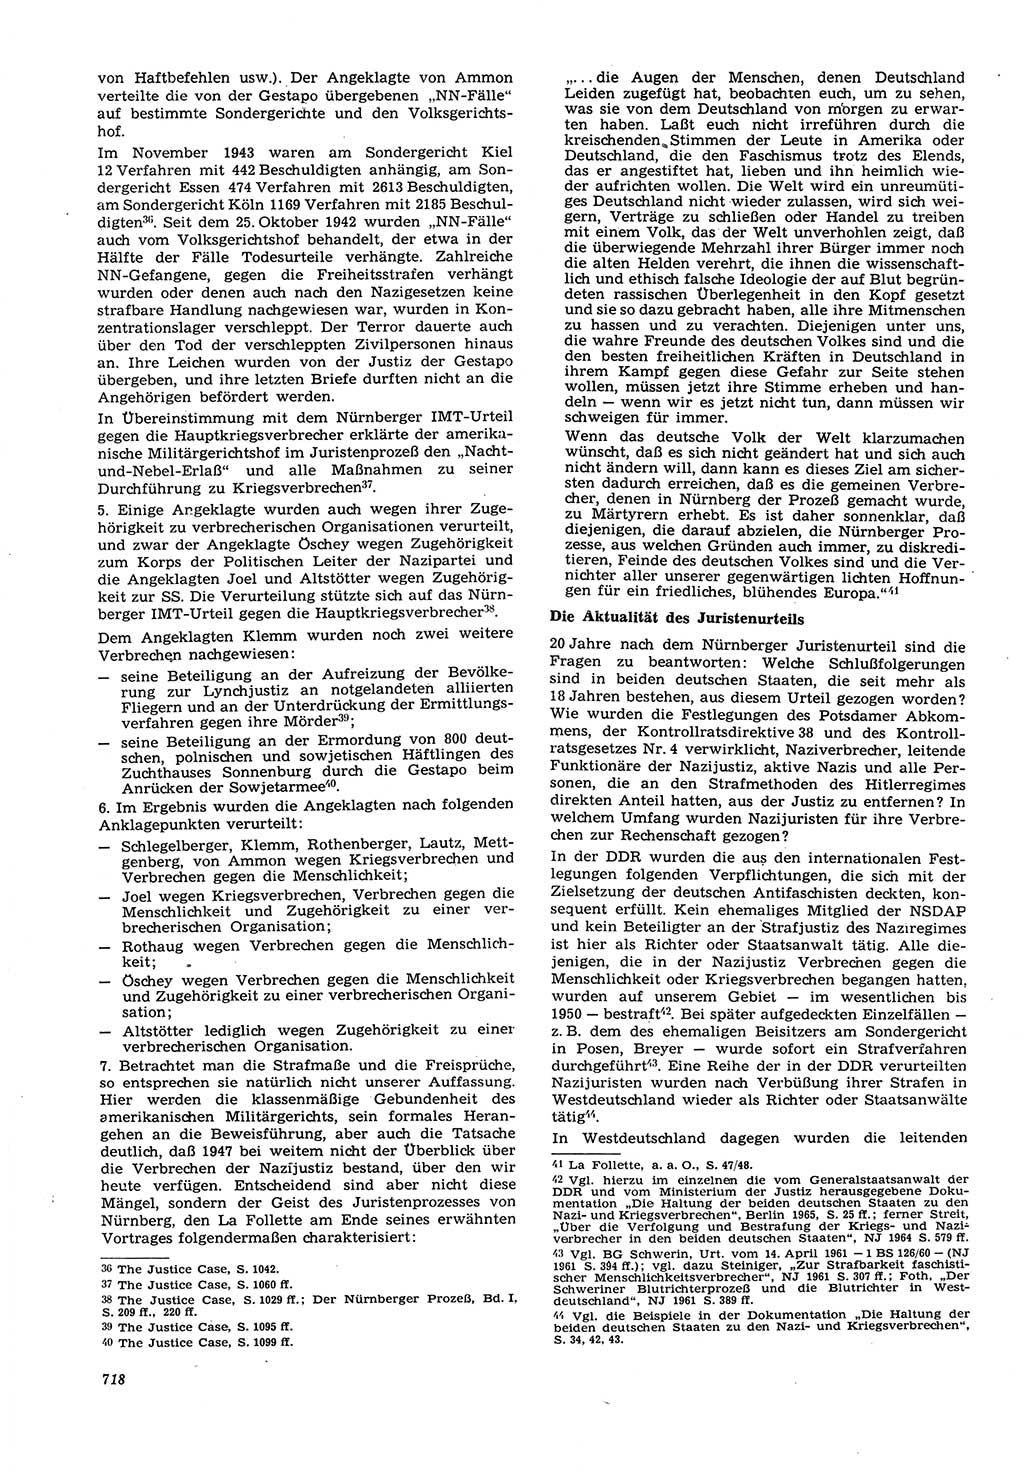 Neue Justiz (NJ), Zeitschrift für Recht und Rechtswissenschaft [Deutsche Demokratische Republik (DDR)], 21. Jahrgang 1967, Seite 718 (NJ DDR 1967, S. 718)